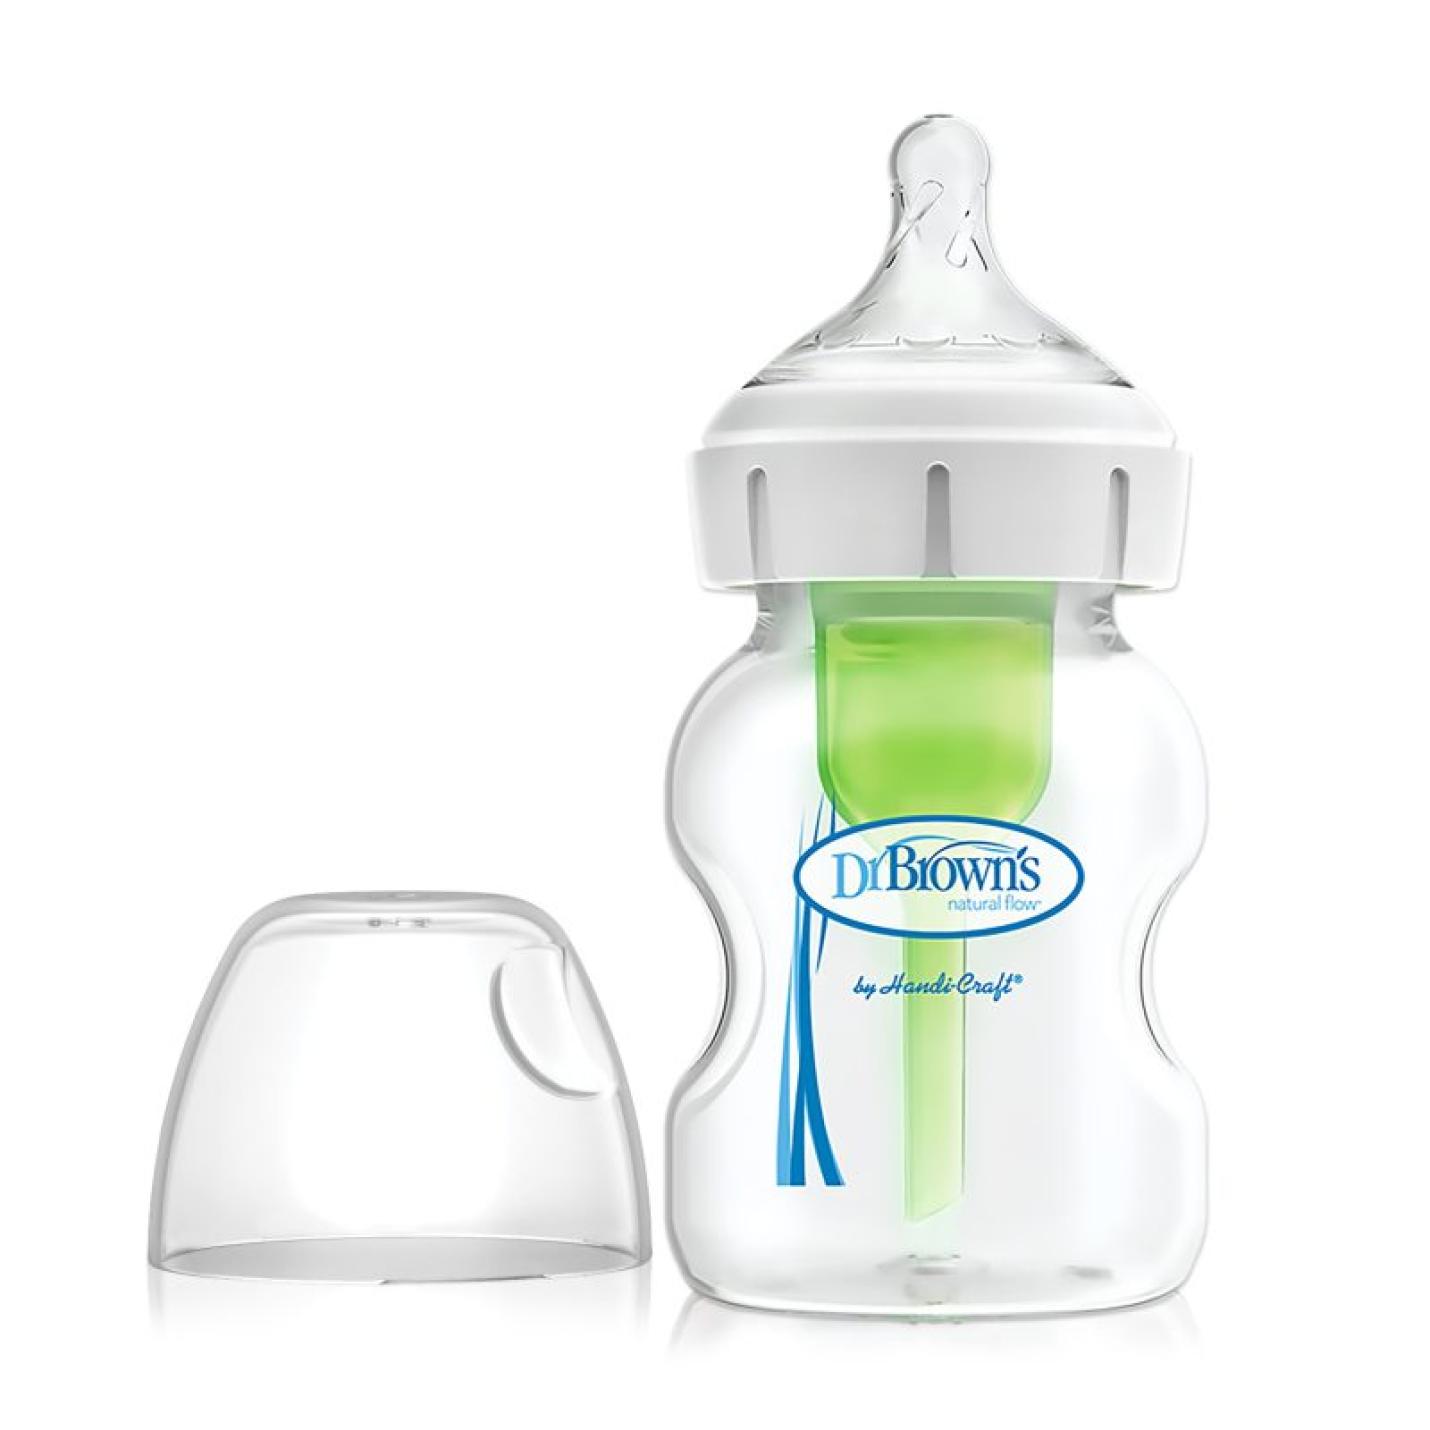 Brede Halsfles is een transparante brede baby fles met blauw logo van Dr.Brown's en groen ventiel/pijpje in de fles inclusief transparante speen in witte ring op hals fles